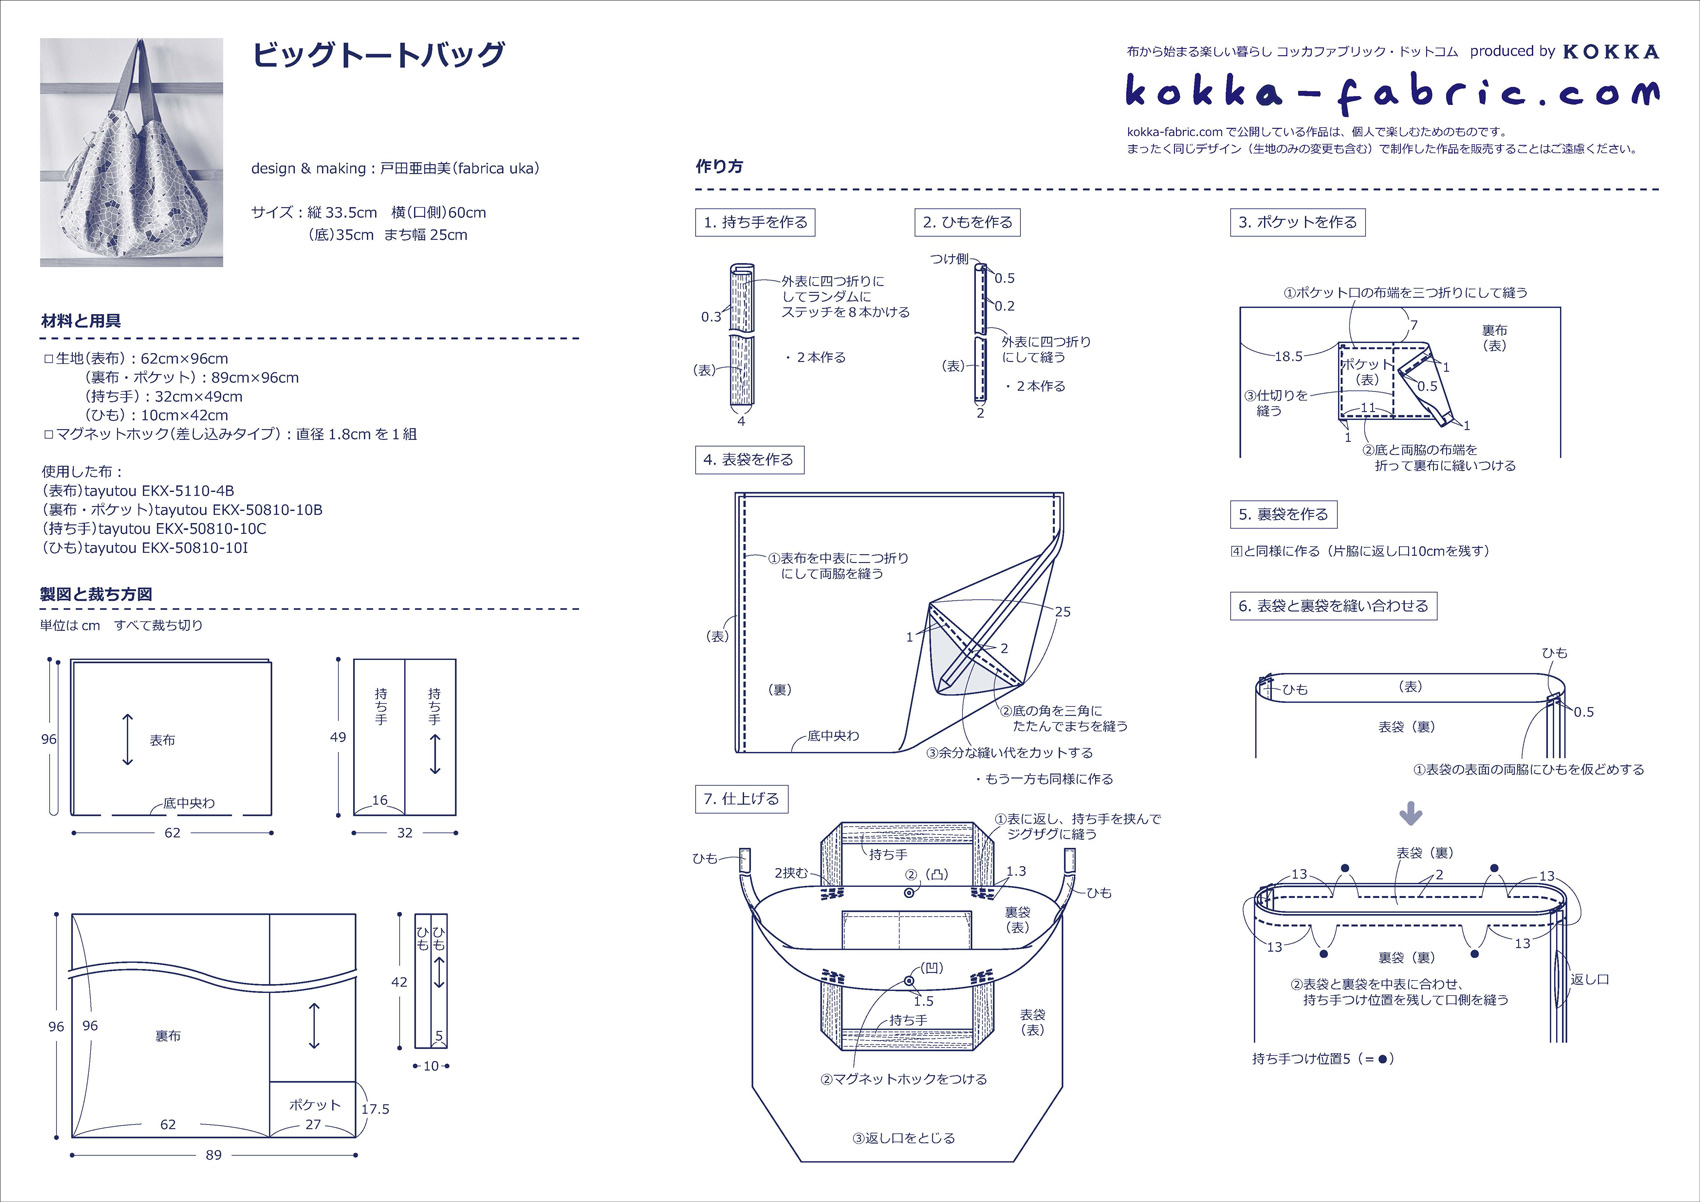 たっぷりマチの ビッグトートバッグ の作り方 コッカファブリック ドットコム 布から始まる楽しい暮らし Kokka Fabric Com